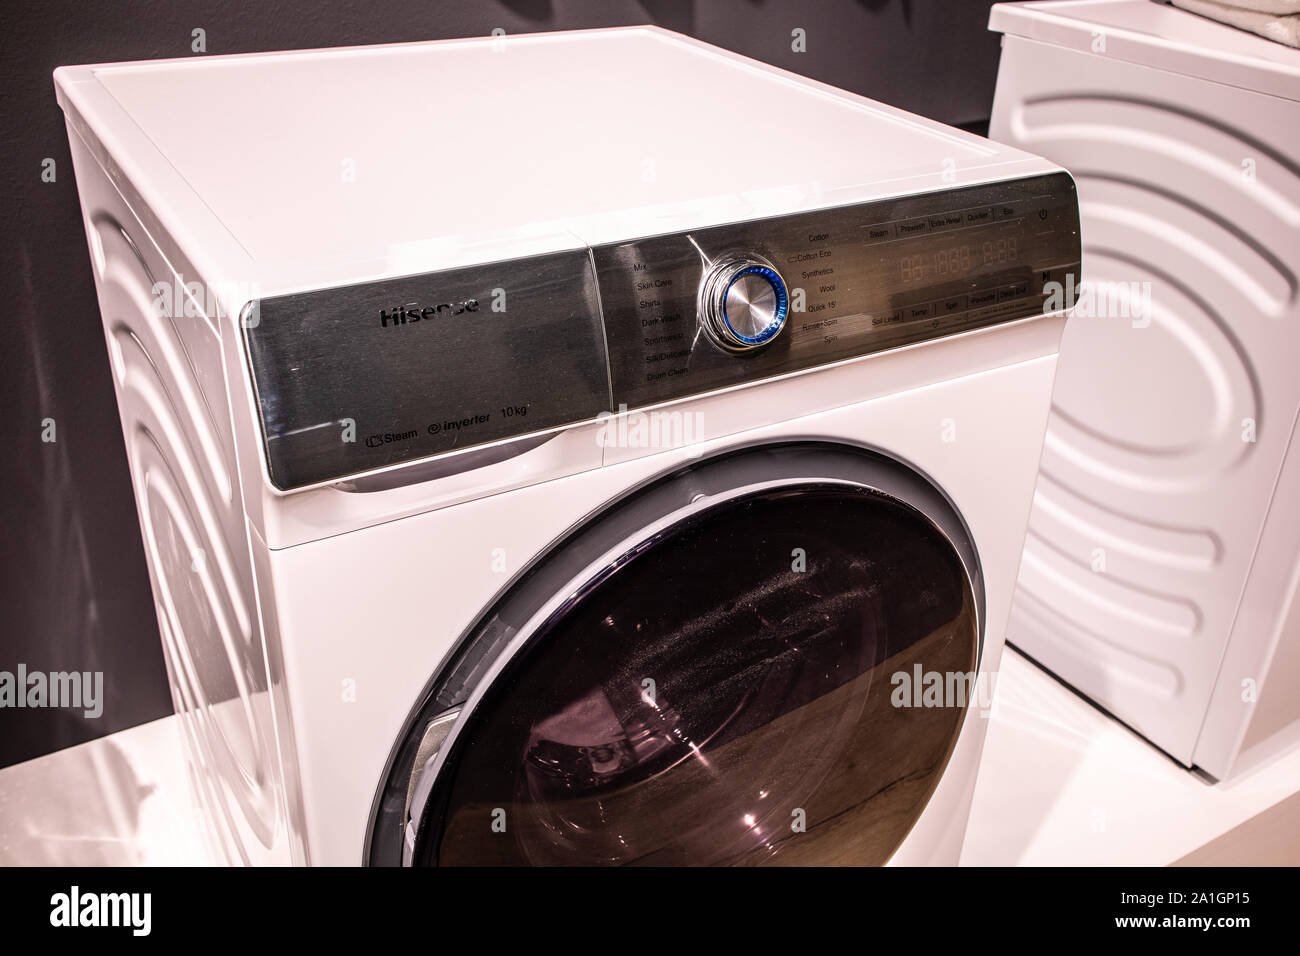 Berlin, Deutschland, Sep 2019 Hisense Waschmaschine Wäschetrockner auf  Anzeige, Hisense Ausstellung showroom stand auf globale Innovationen zeigen  IFA 2019 Stockfotografie - Alamy